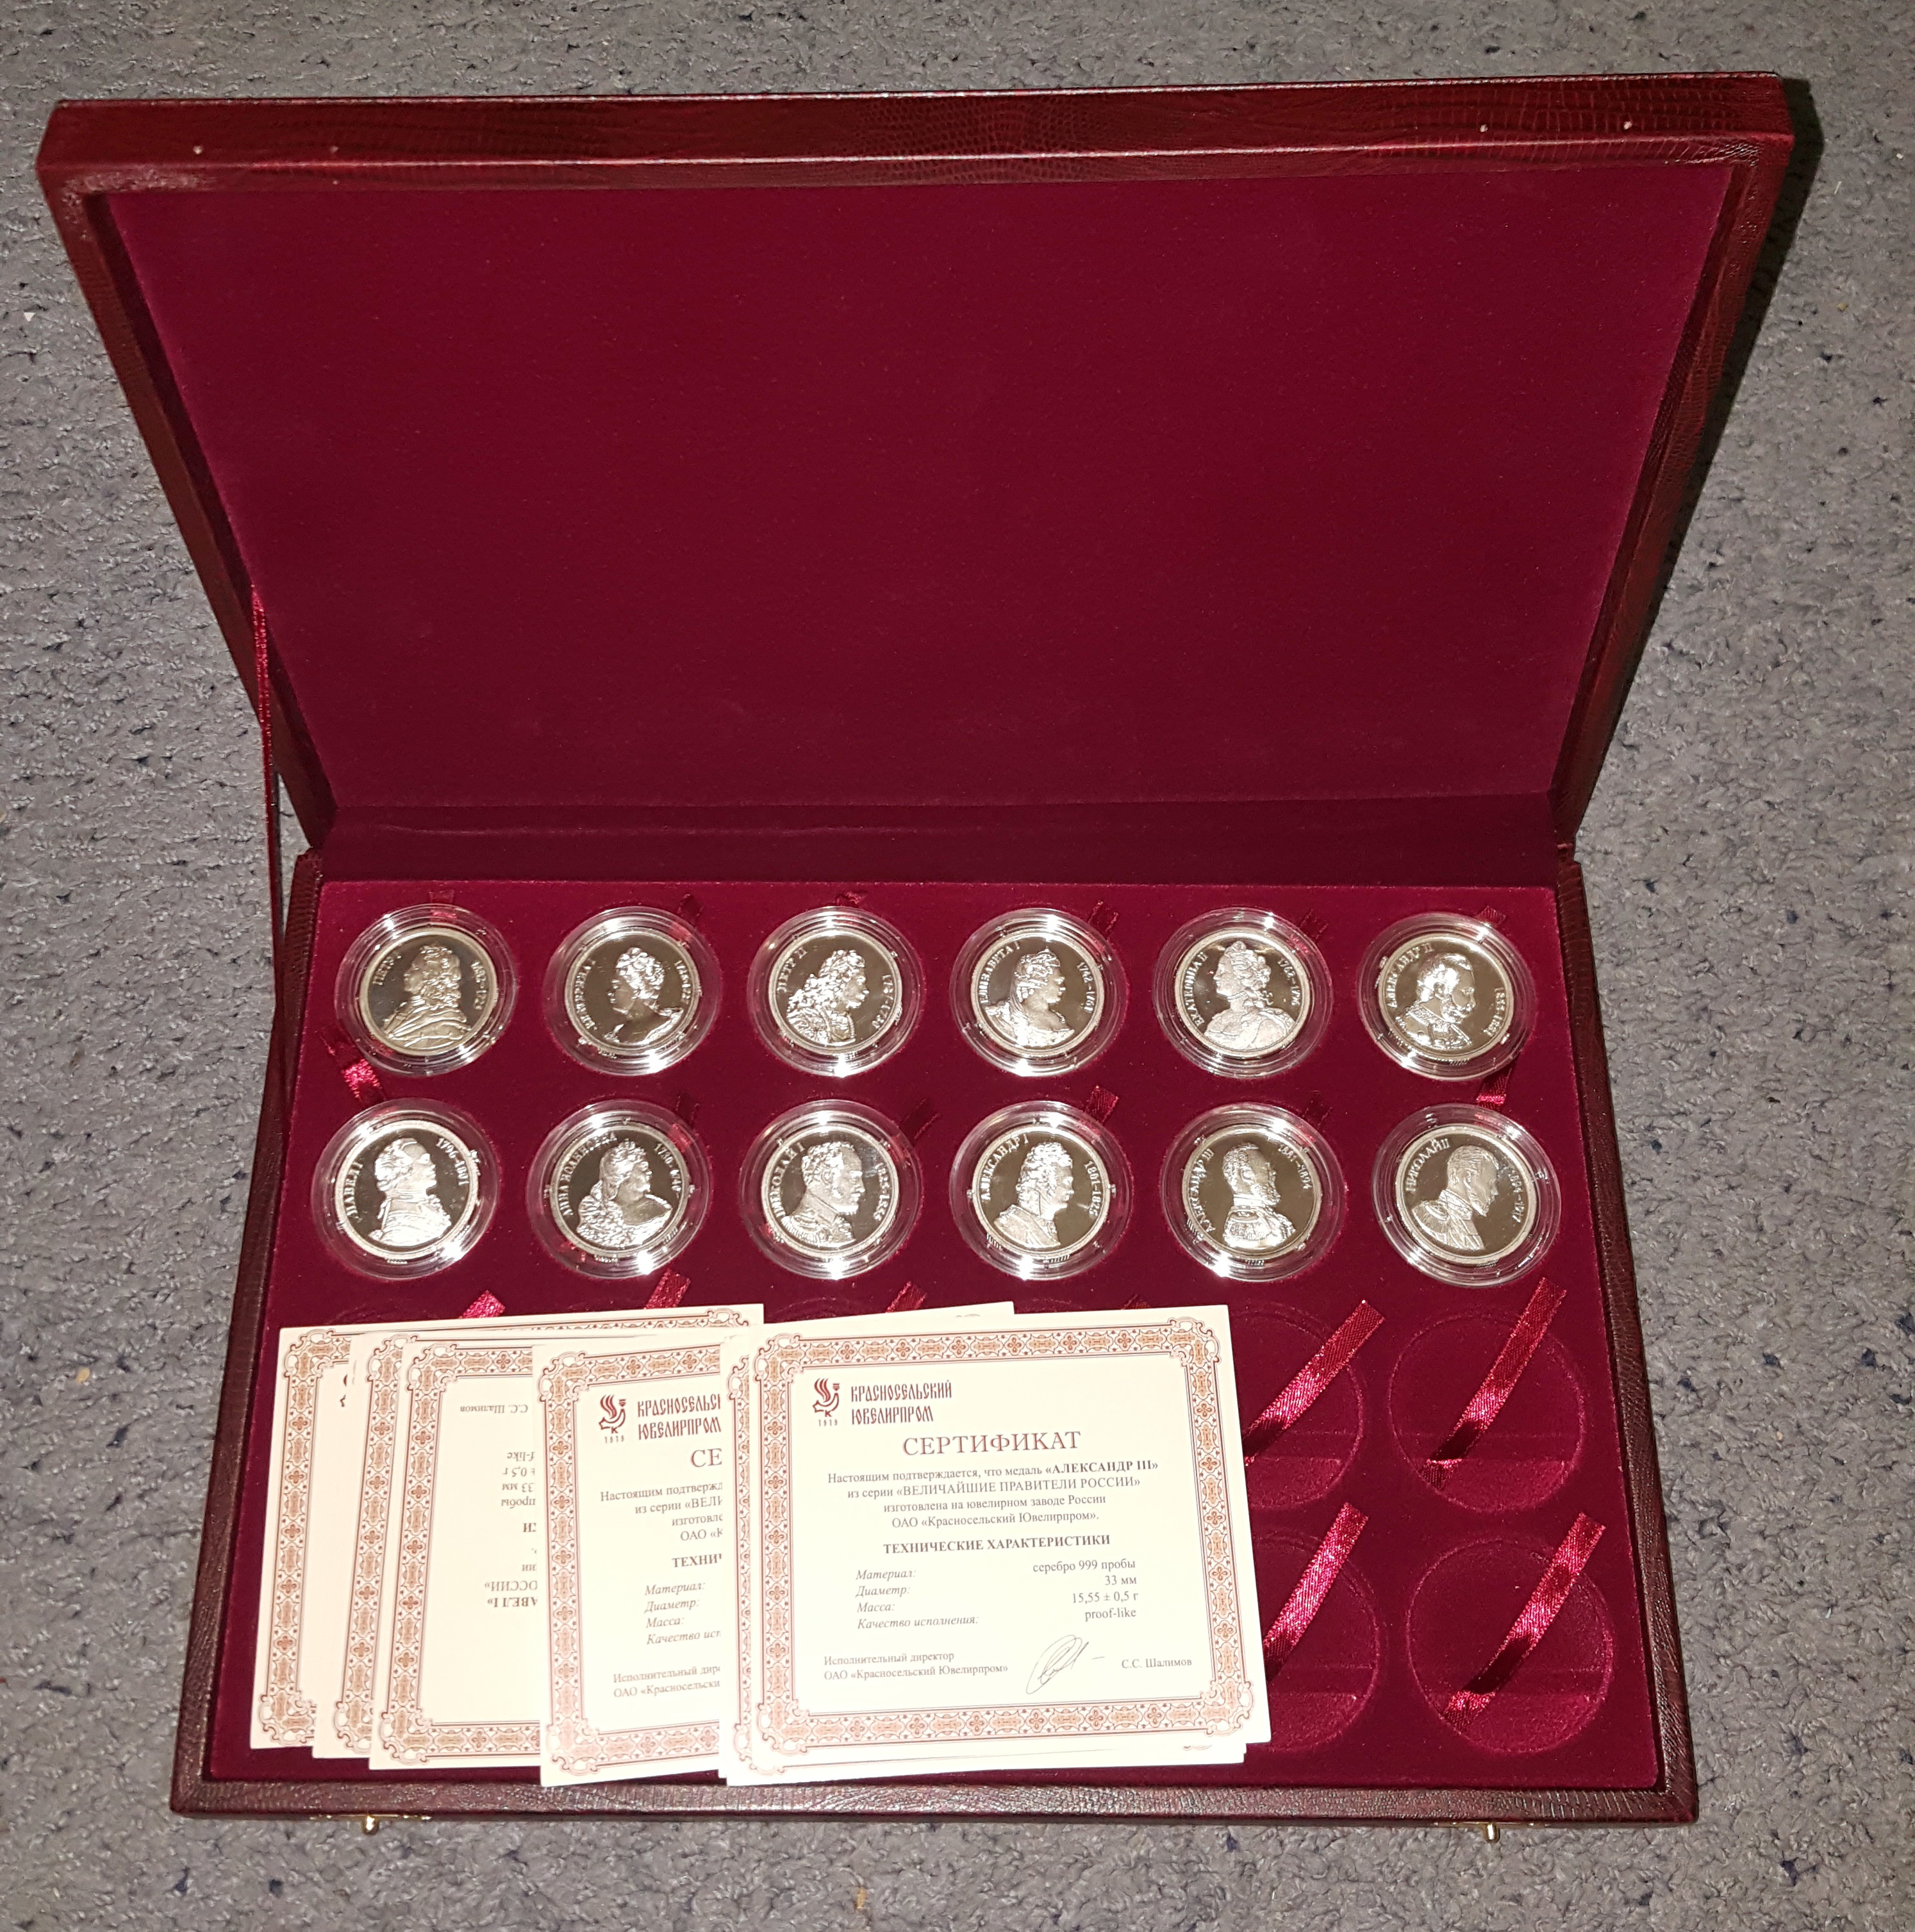 Медали серебряные с императорами. Продаётся и находится в Ульяновске .Телефон 8 905 349 8210.